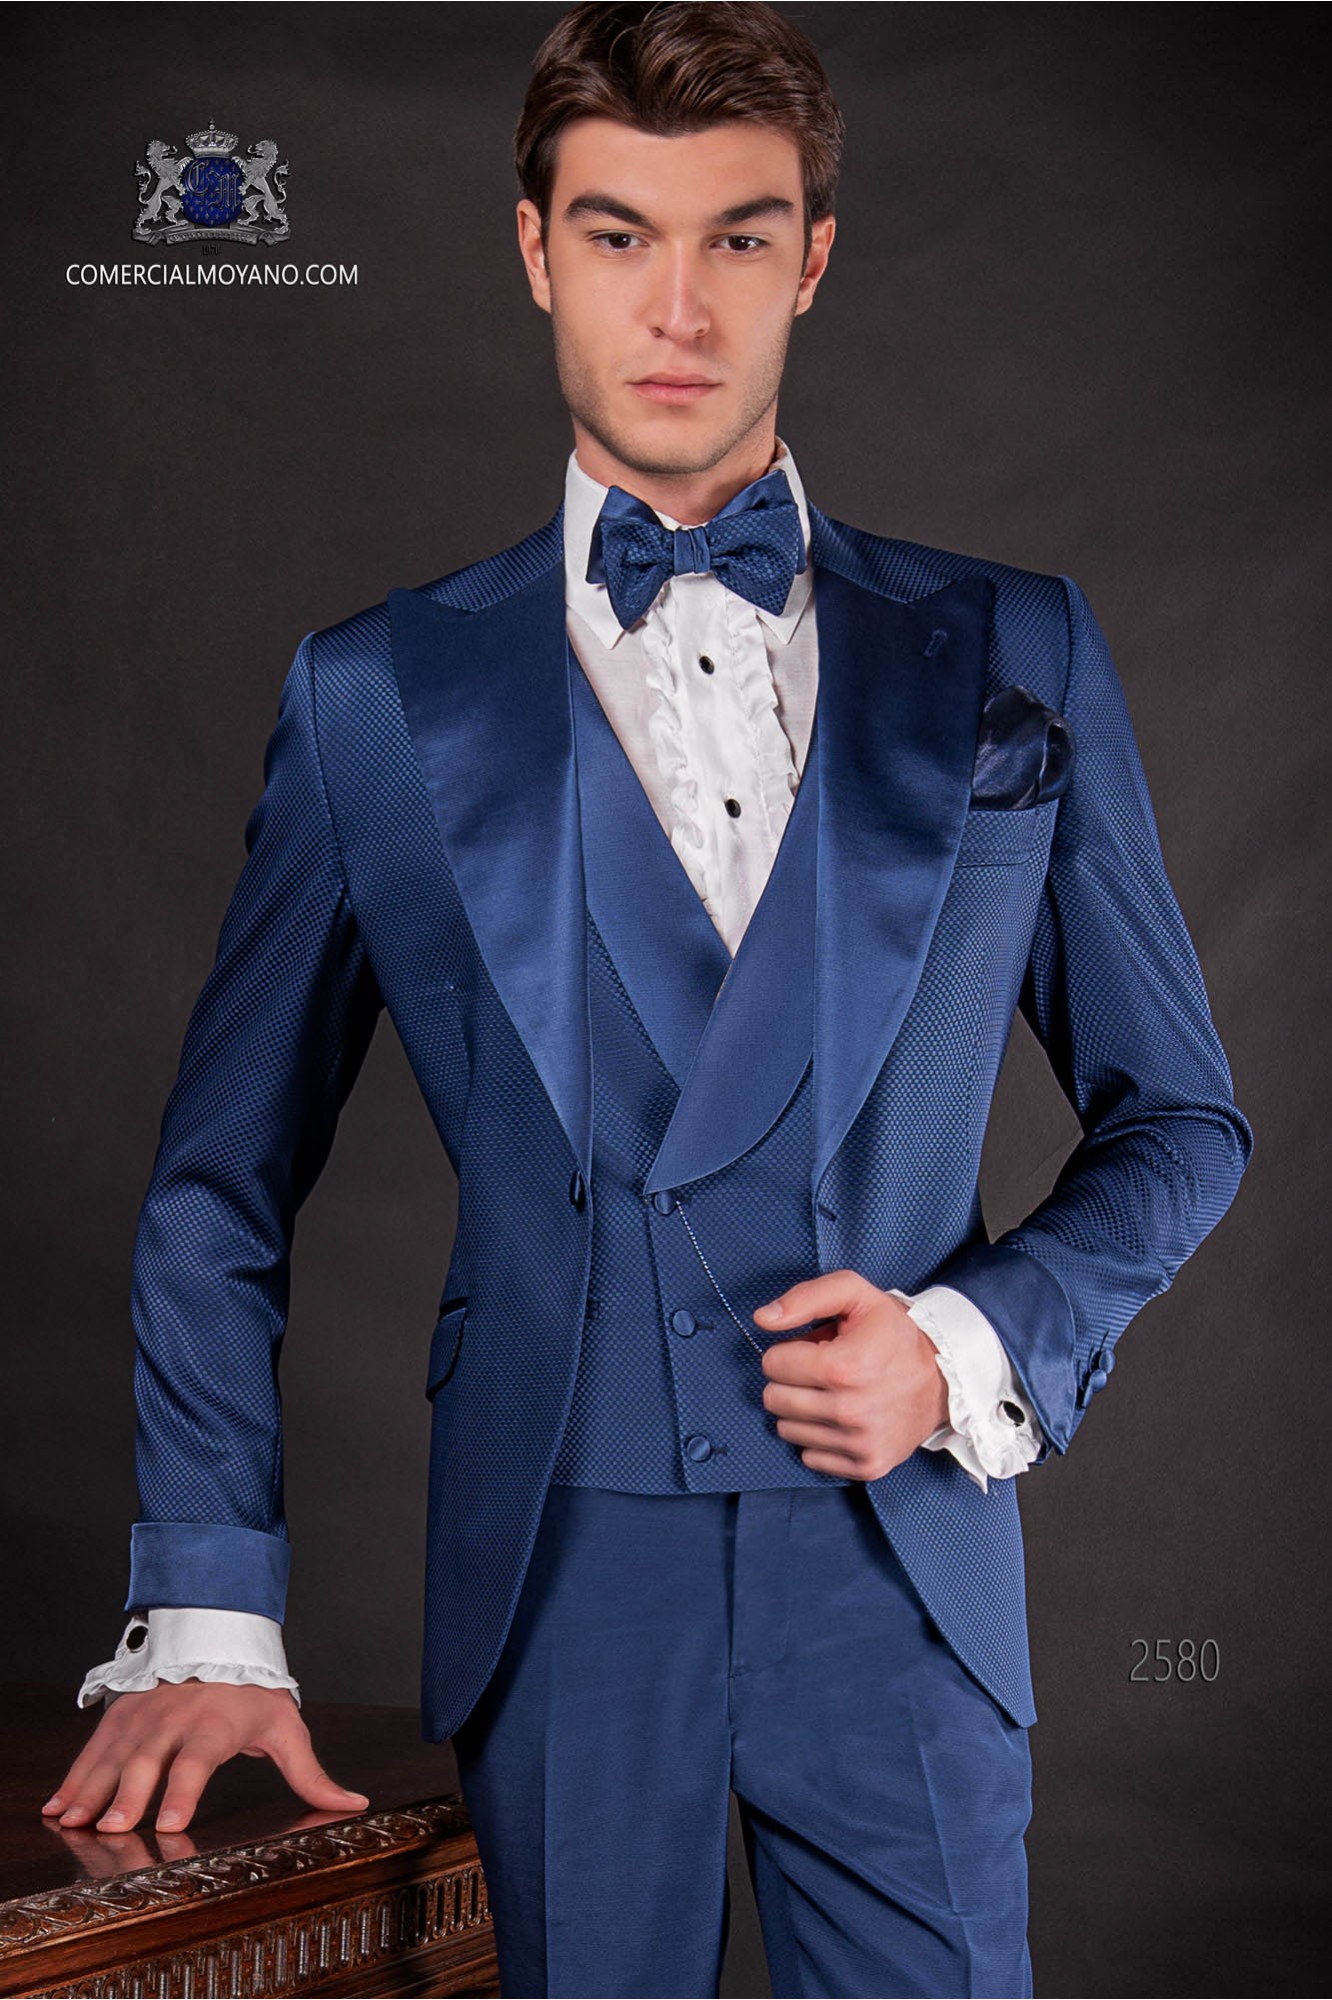 Traje de novio italiano azul royal en tejido microdiseño modelo: 2580 Mario Moyano colección Fashion